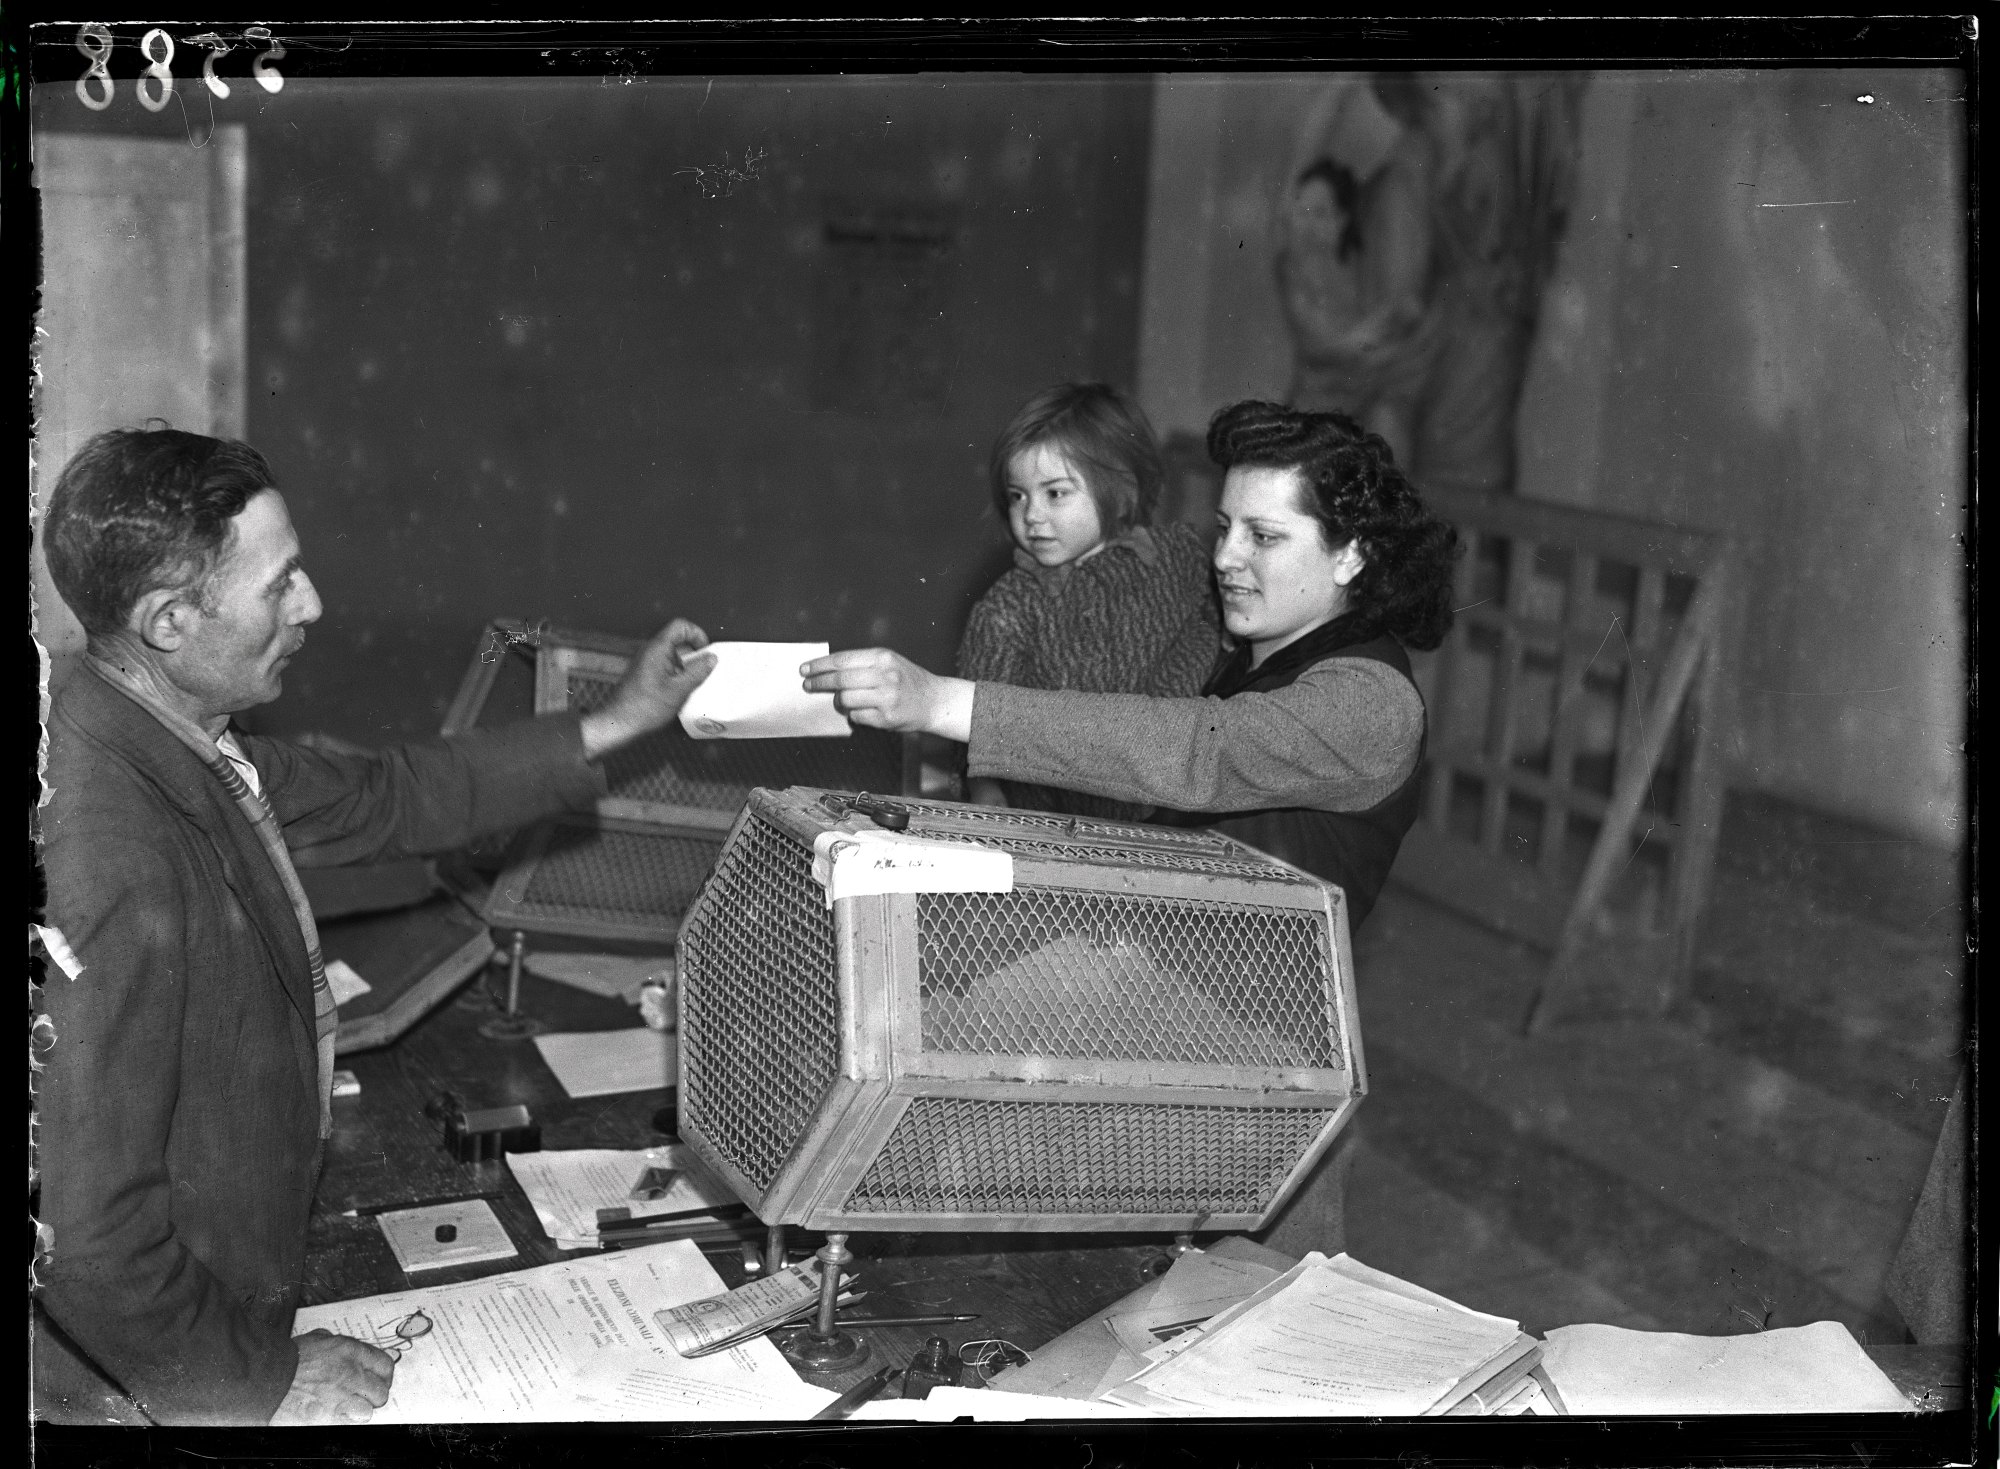 Una donna, con un bambino in braccio, consegna il certificato elettorale al seggio in occasione delle elezioni comunali nel Lodigiano, le prime elezioni a suffragio universale in Italia, 17 marzo 1946  Fotografia di Publifoto 